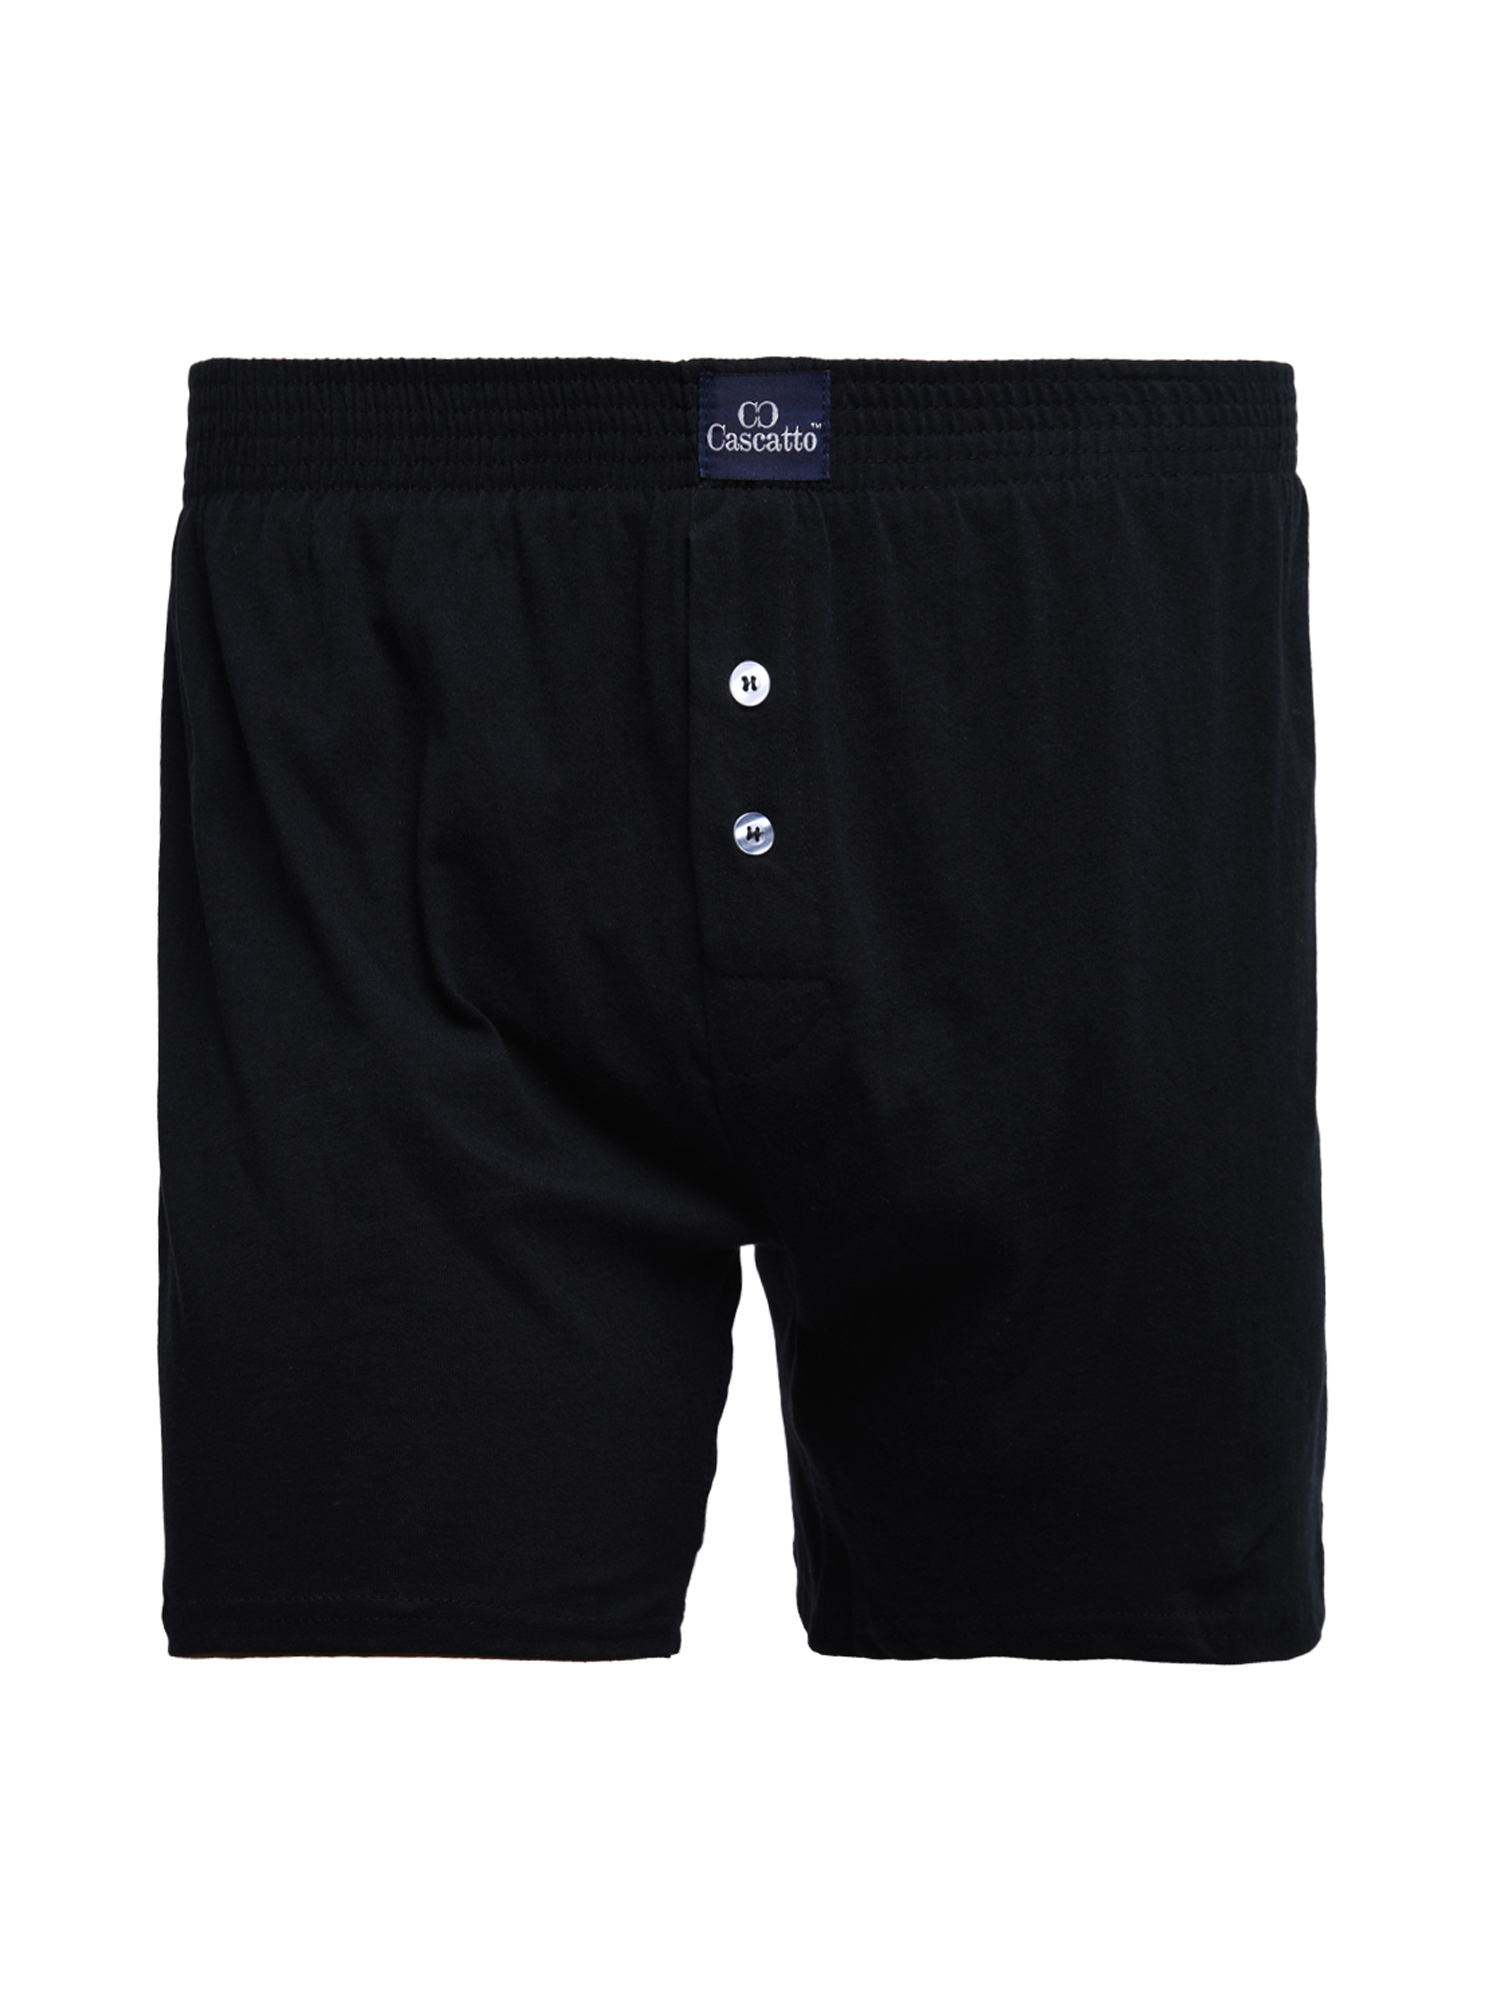 Трусы Cascatto шорты для мужчин, чёрный, размер L, MSH1803